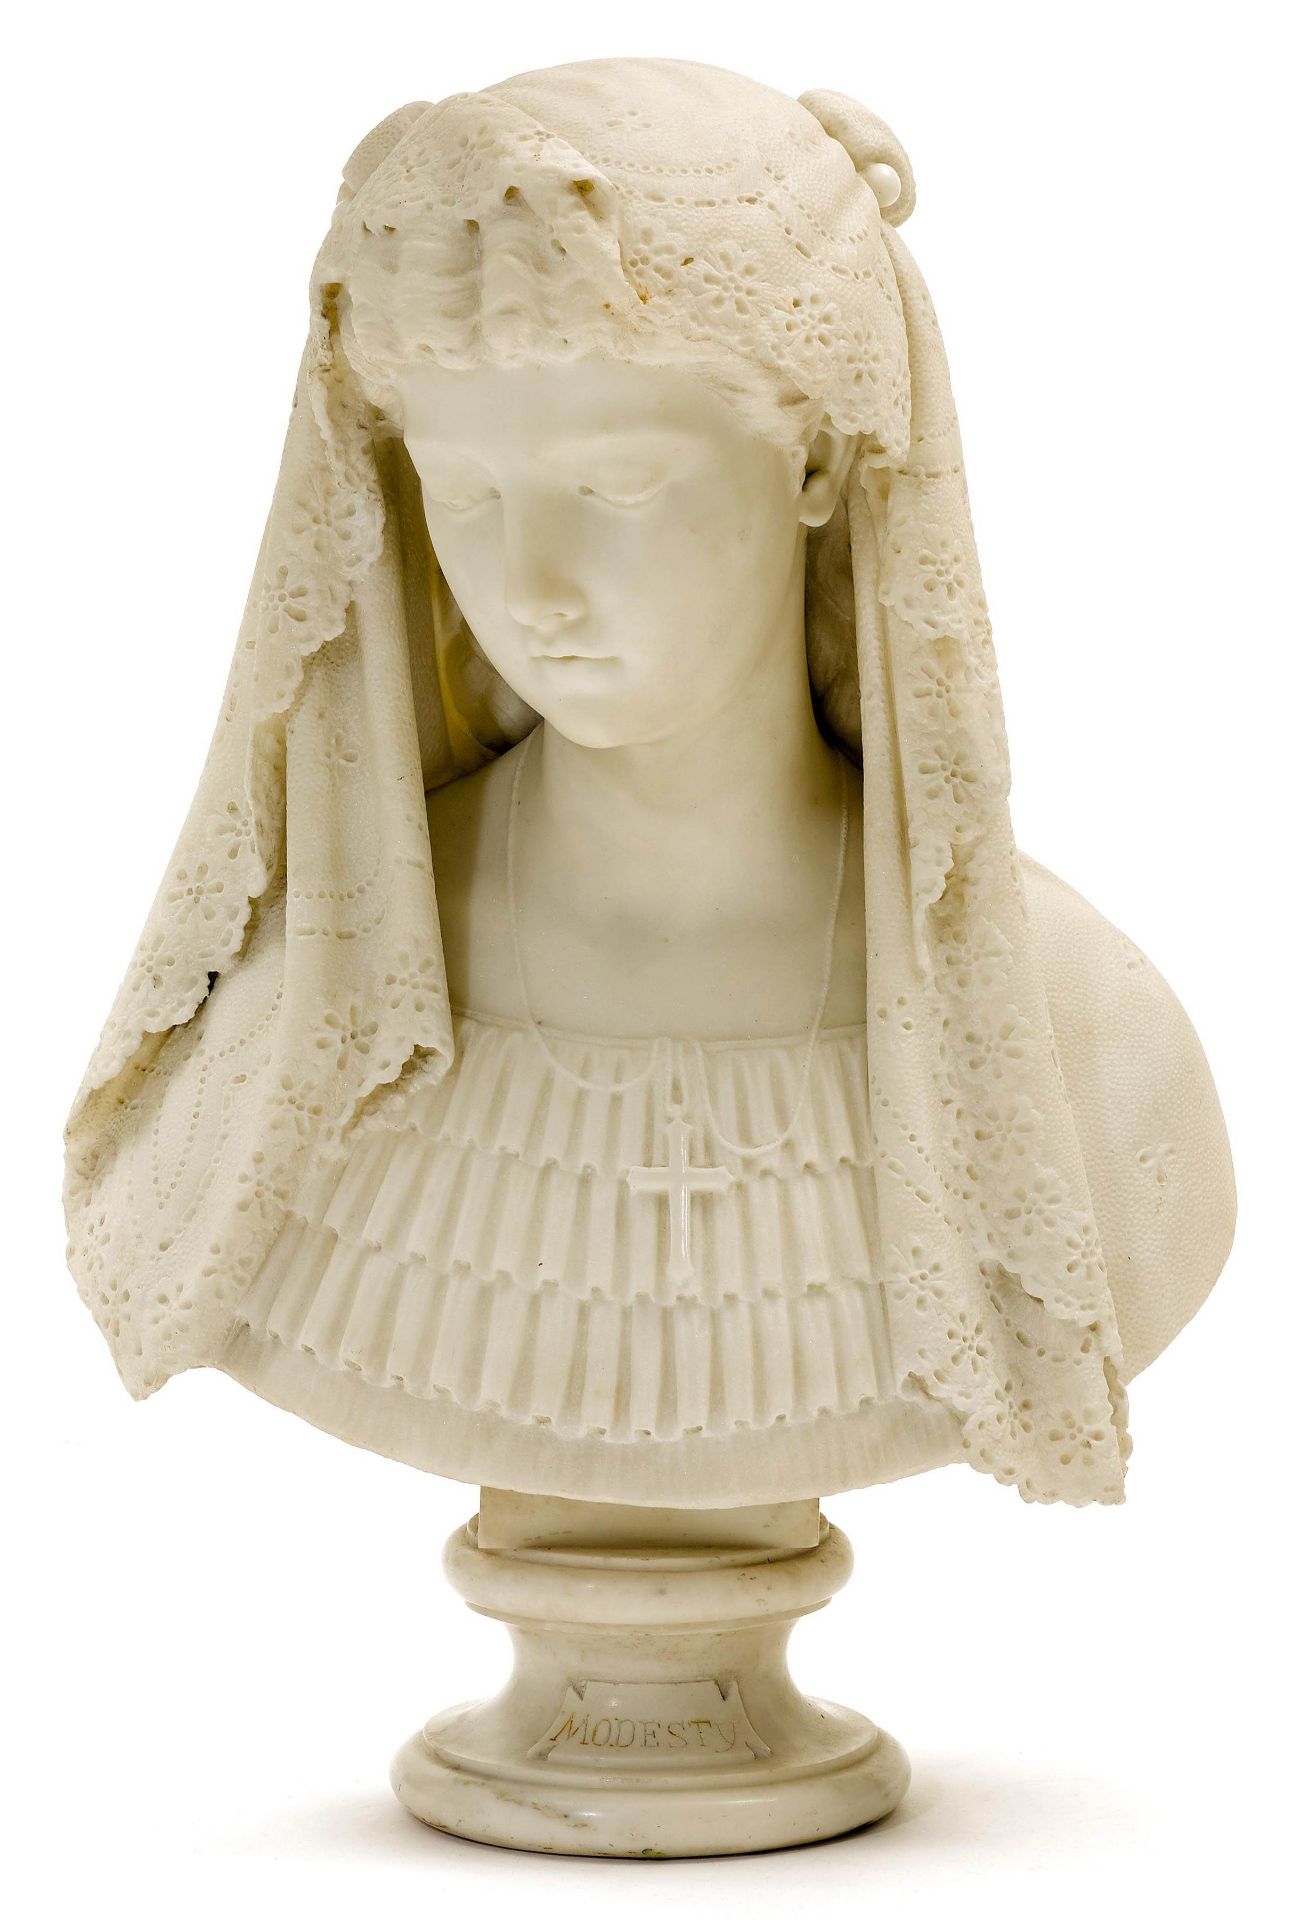 ANTONIO BOTTINELLI(1827 - 1898)Weibliche Marmorbüste als Allegorie der Sittsamkeit. Weisser